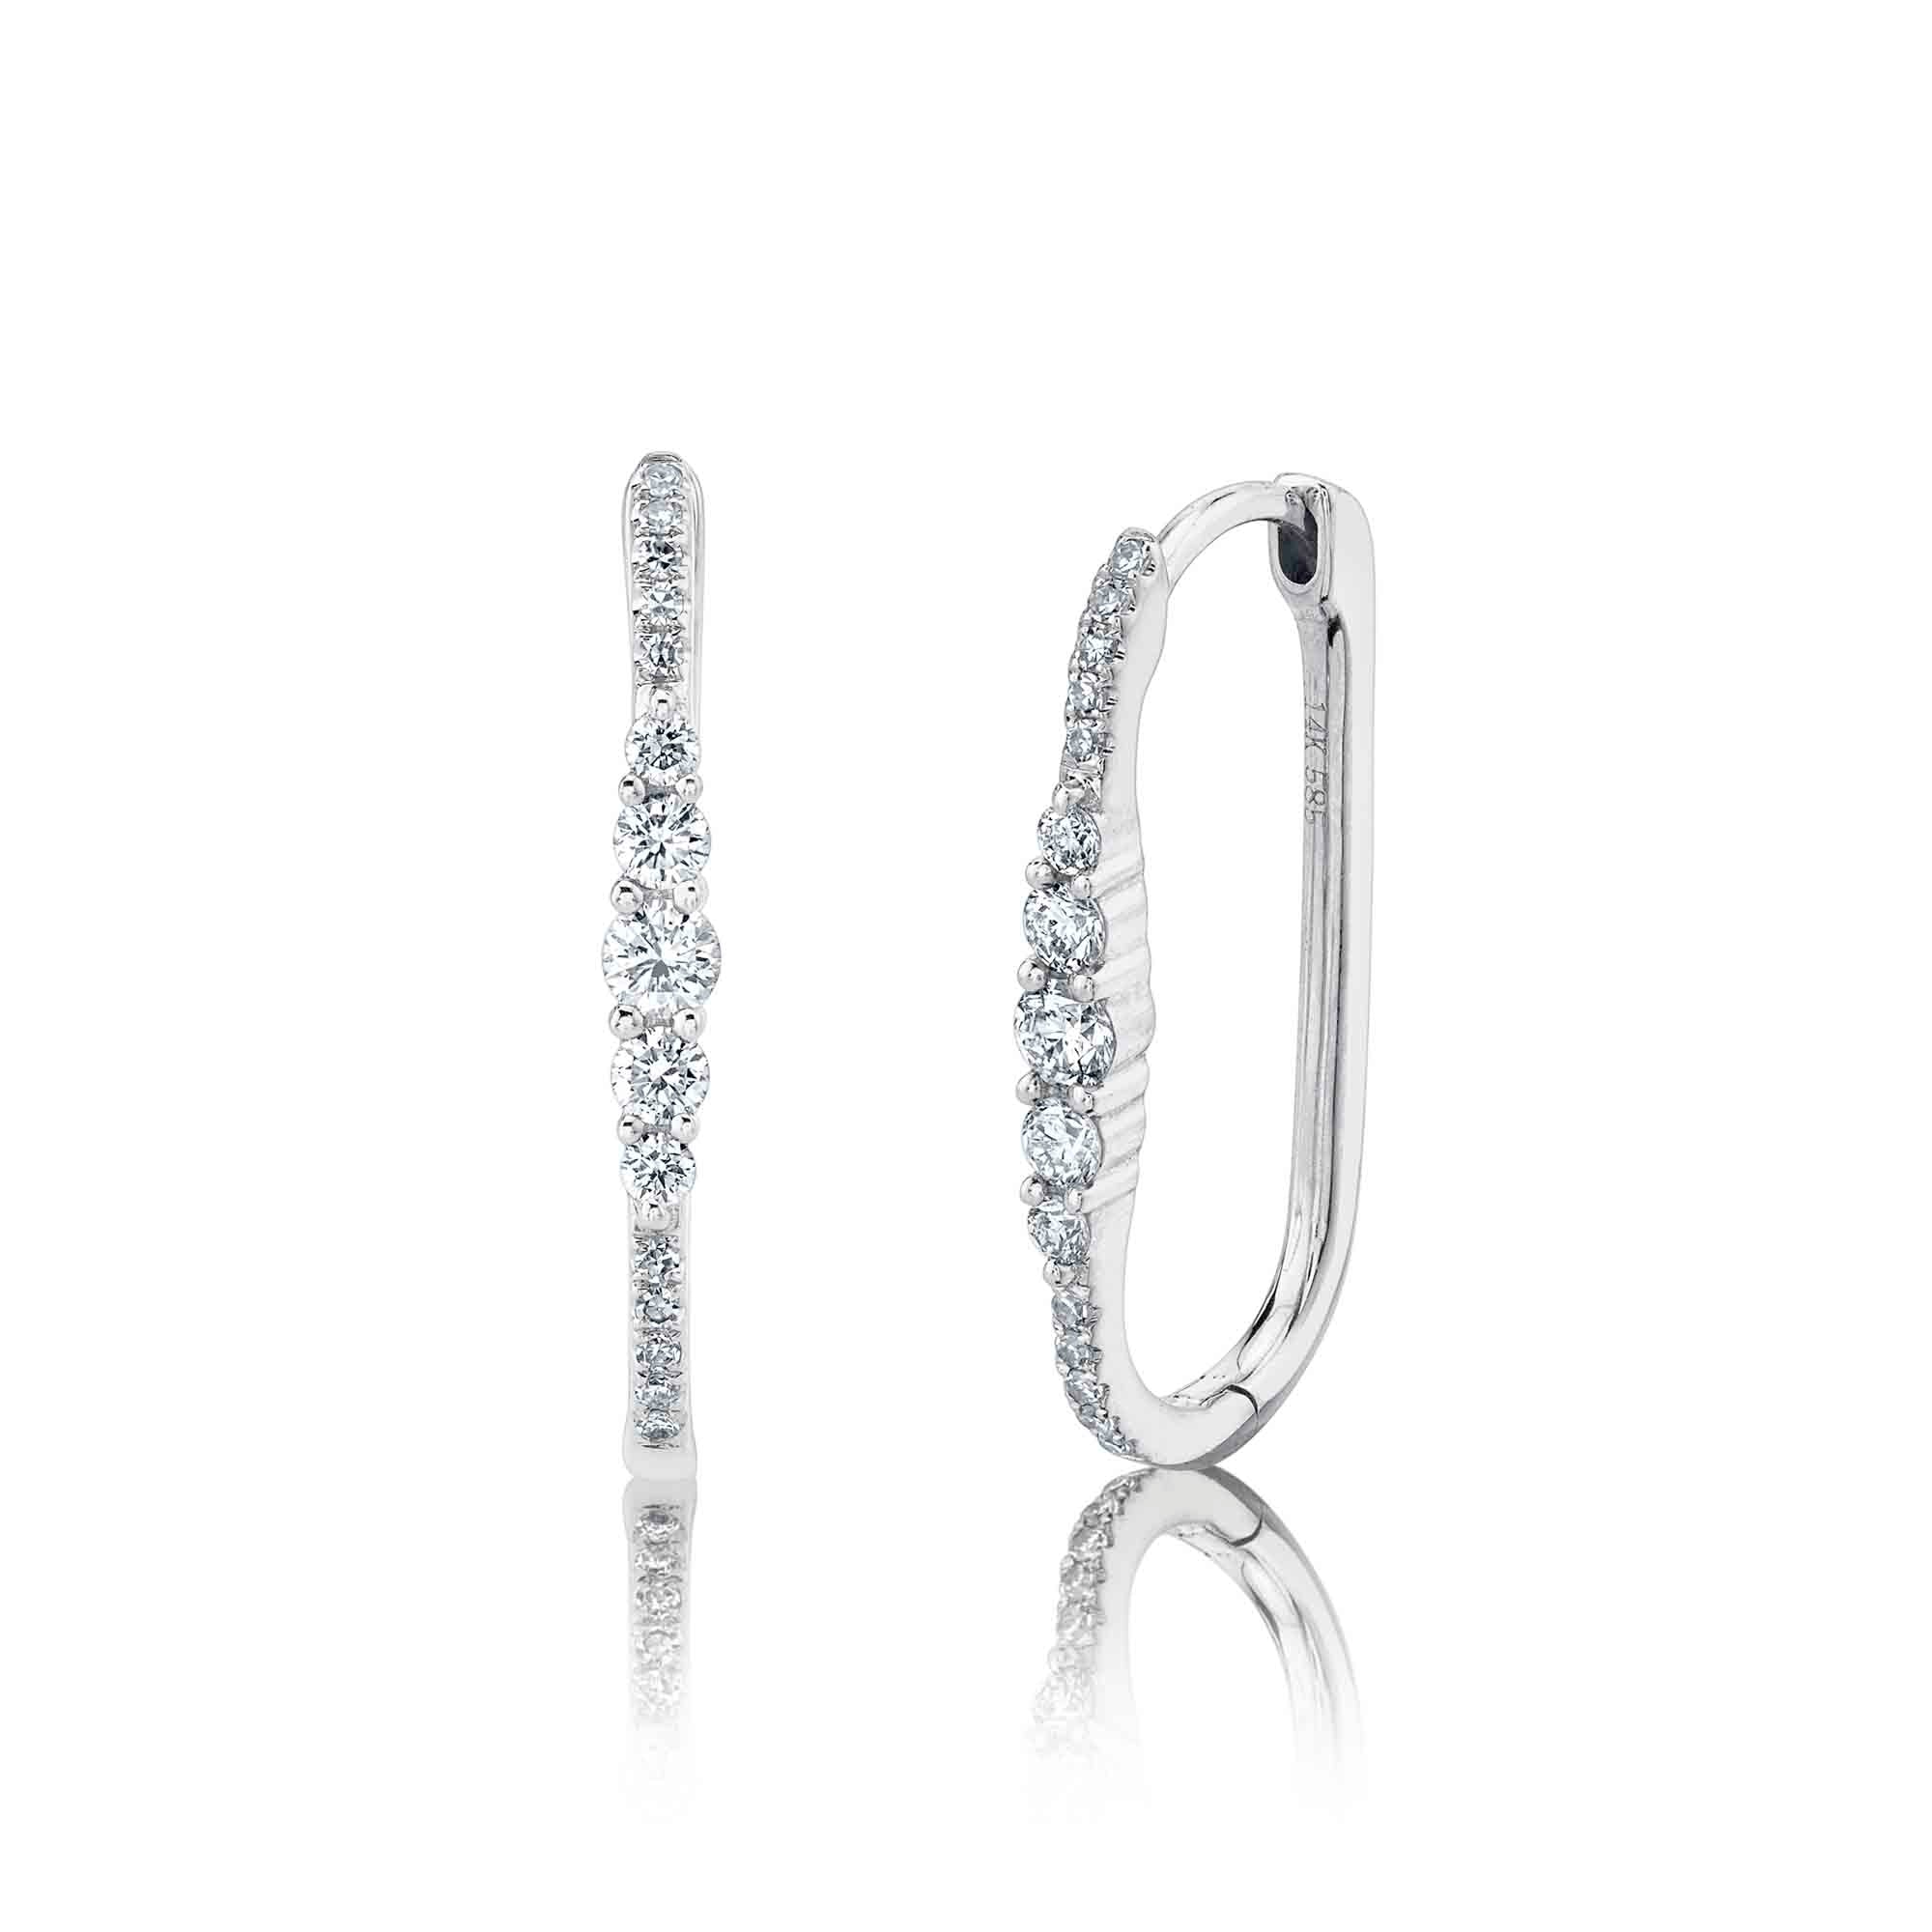 White Gold Diamond Pave Oval Hoop Earrings Earrings Gift Giving